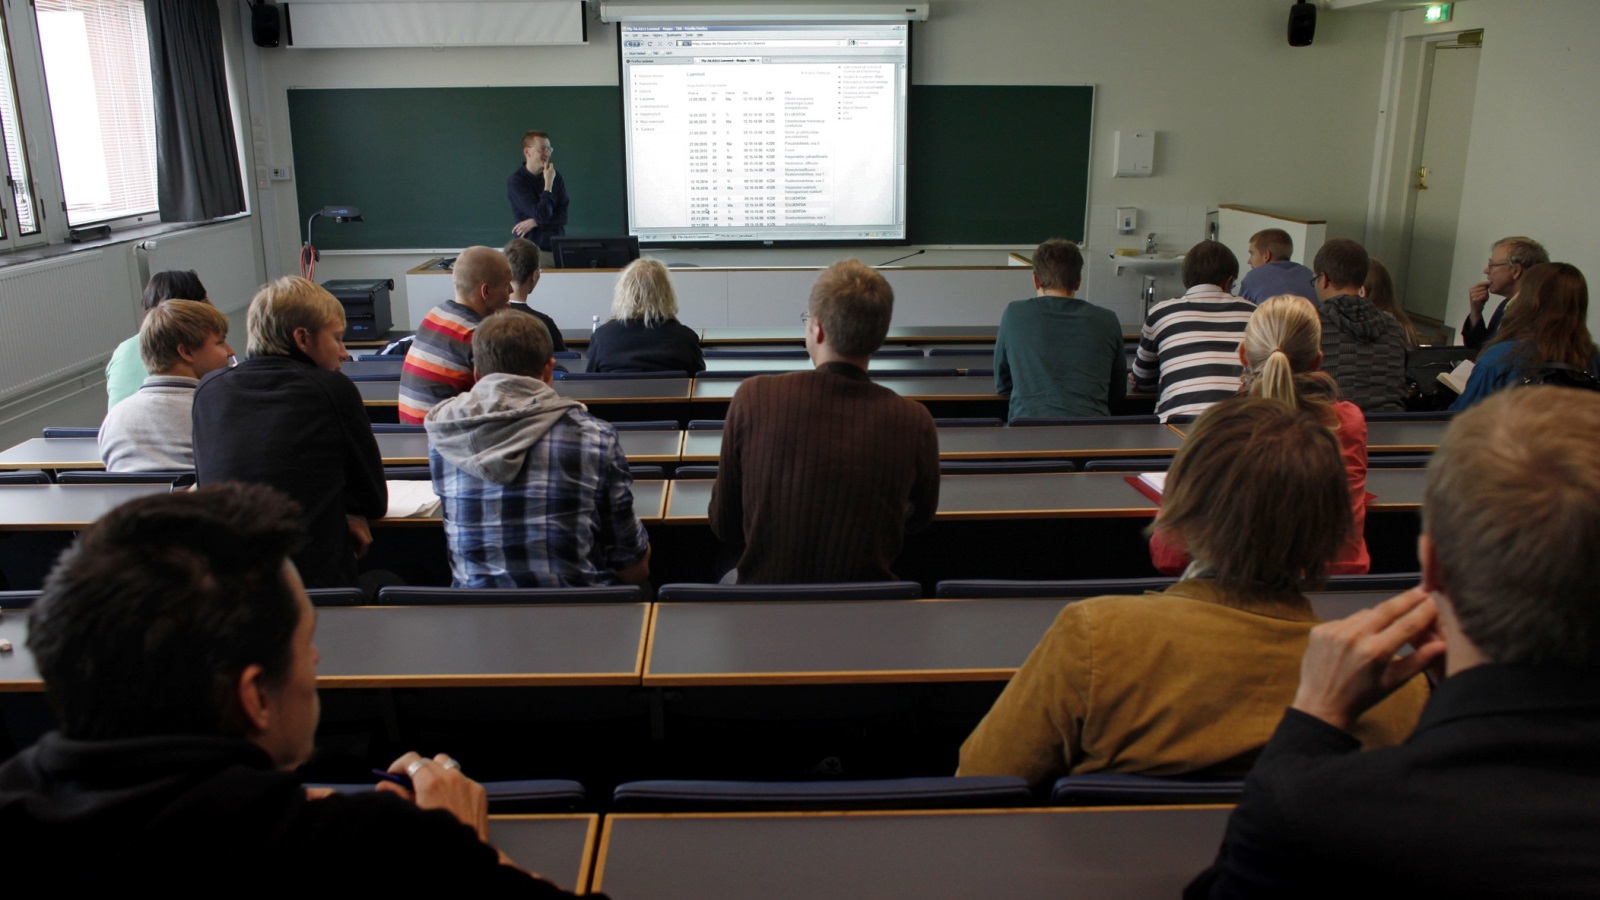 الطلاب الذين سيلتحقون مستقبلًا بالبرامج الدراسية المقدمة باللغة الفنلندية أو السويدية سيكون التعليم مجانيا لهم.